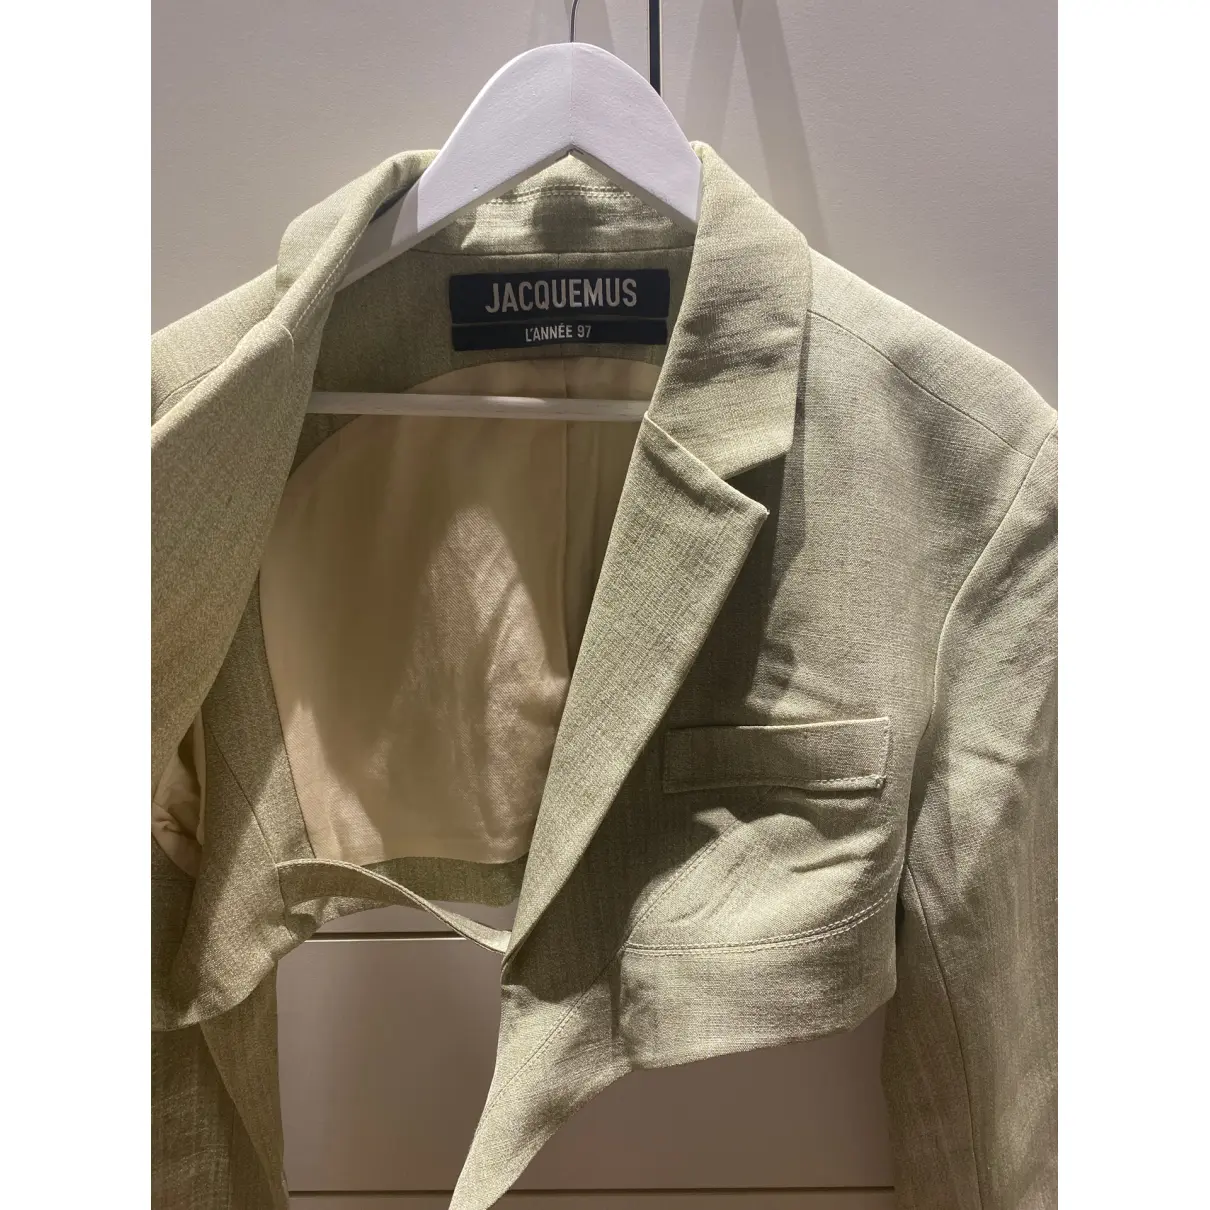 Buy Jacquemus L'Année 97 linen blazer online